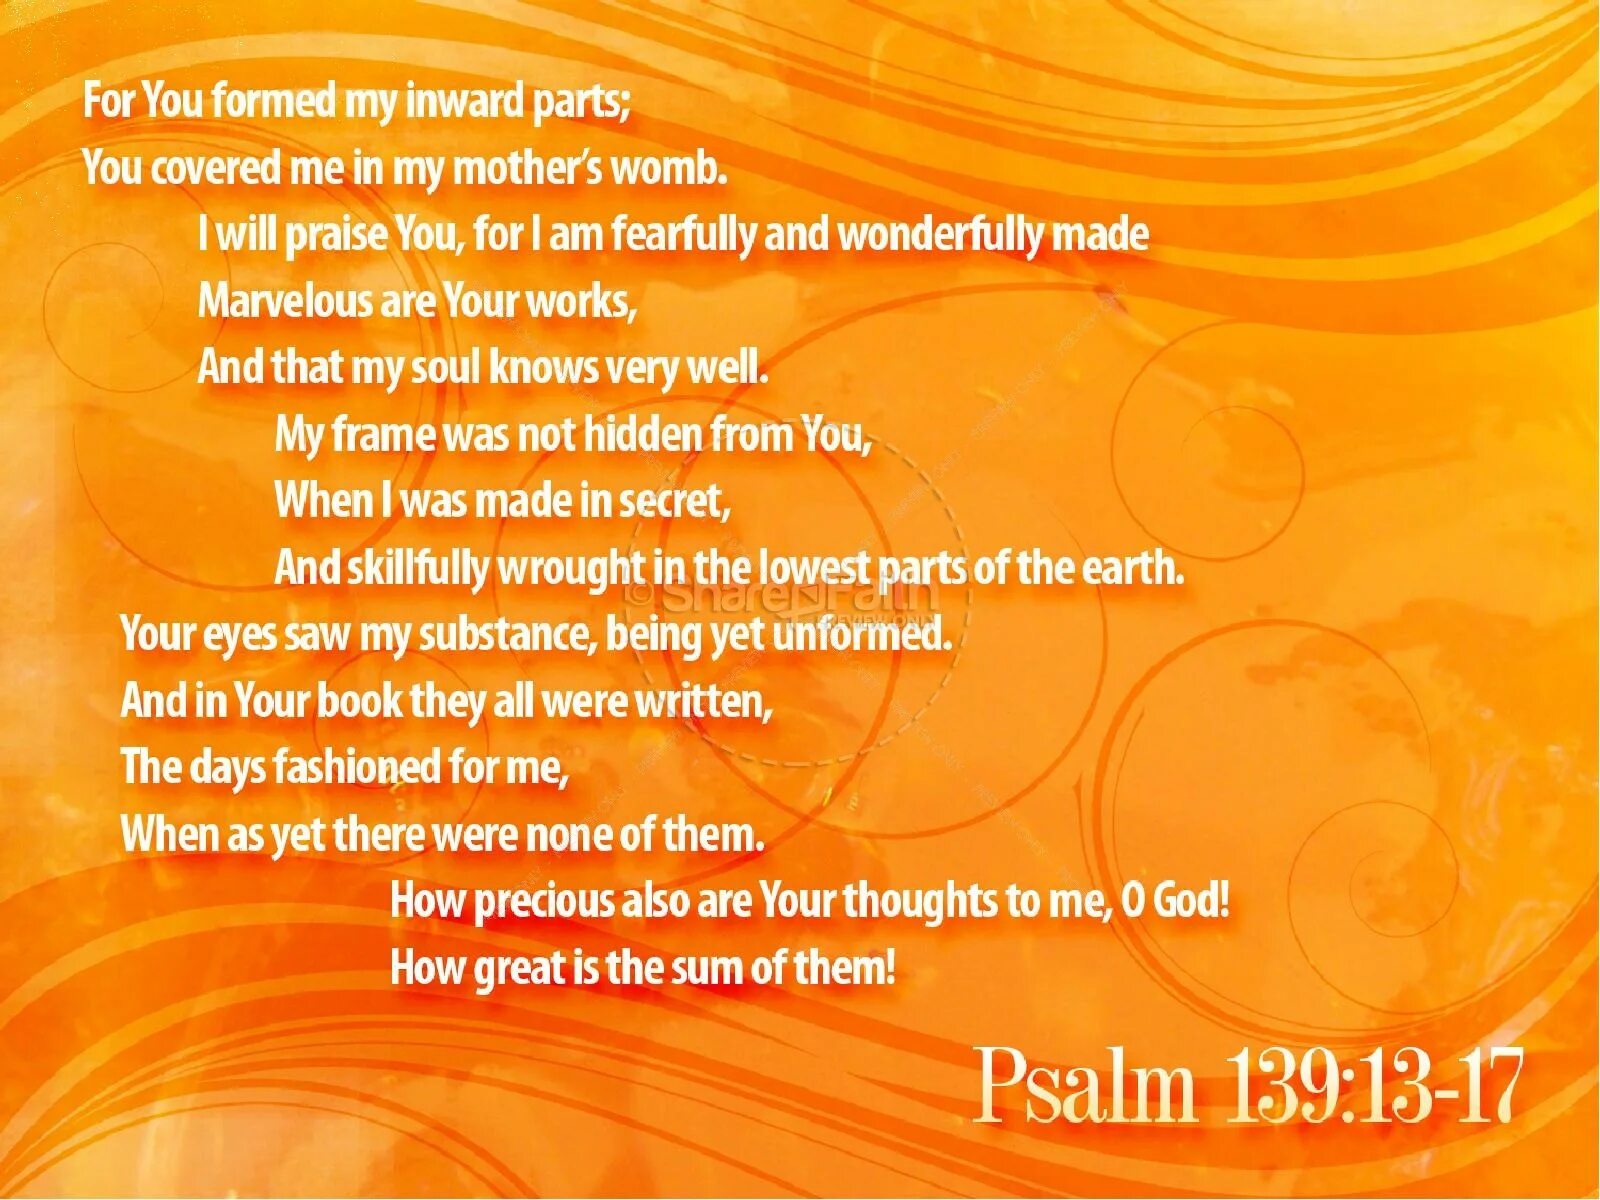 Псалом 139 читать на русском. Псалом 139. Псалом 139:15-16. Псалом 139:17-18. Псалом 139 на русском текст.